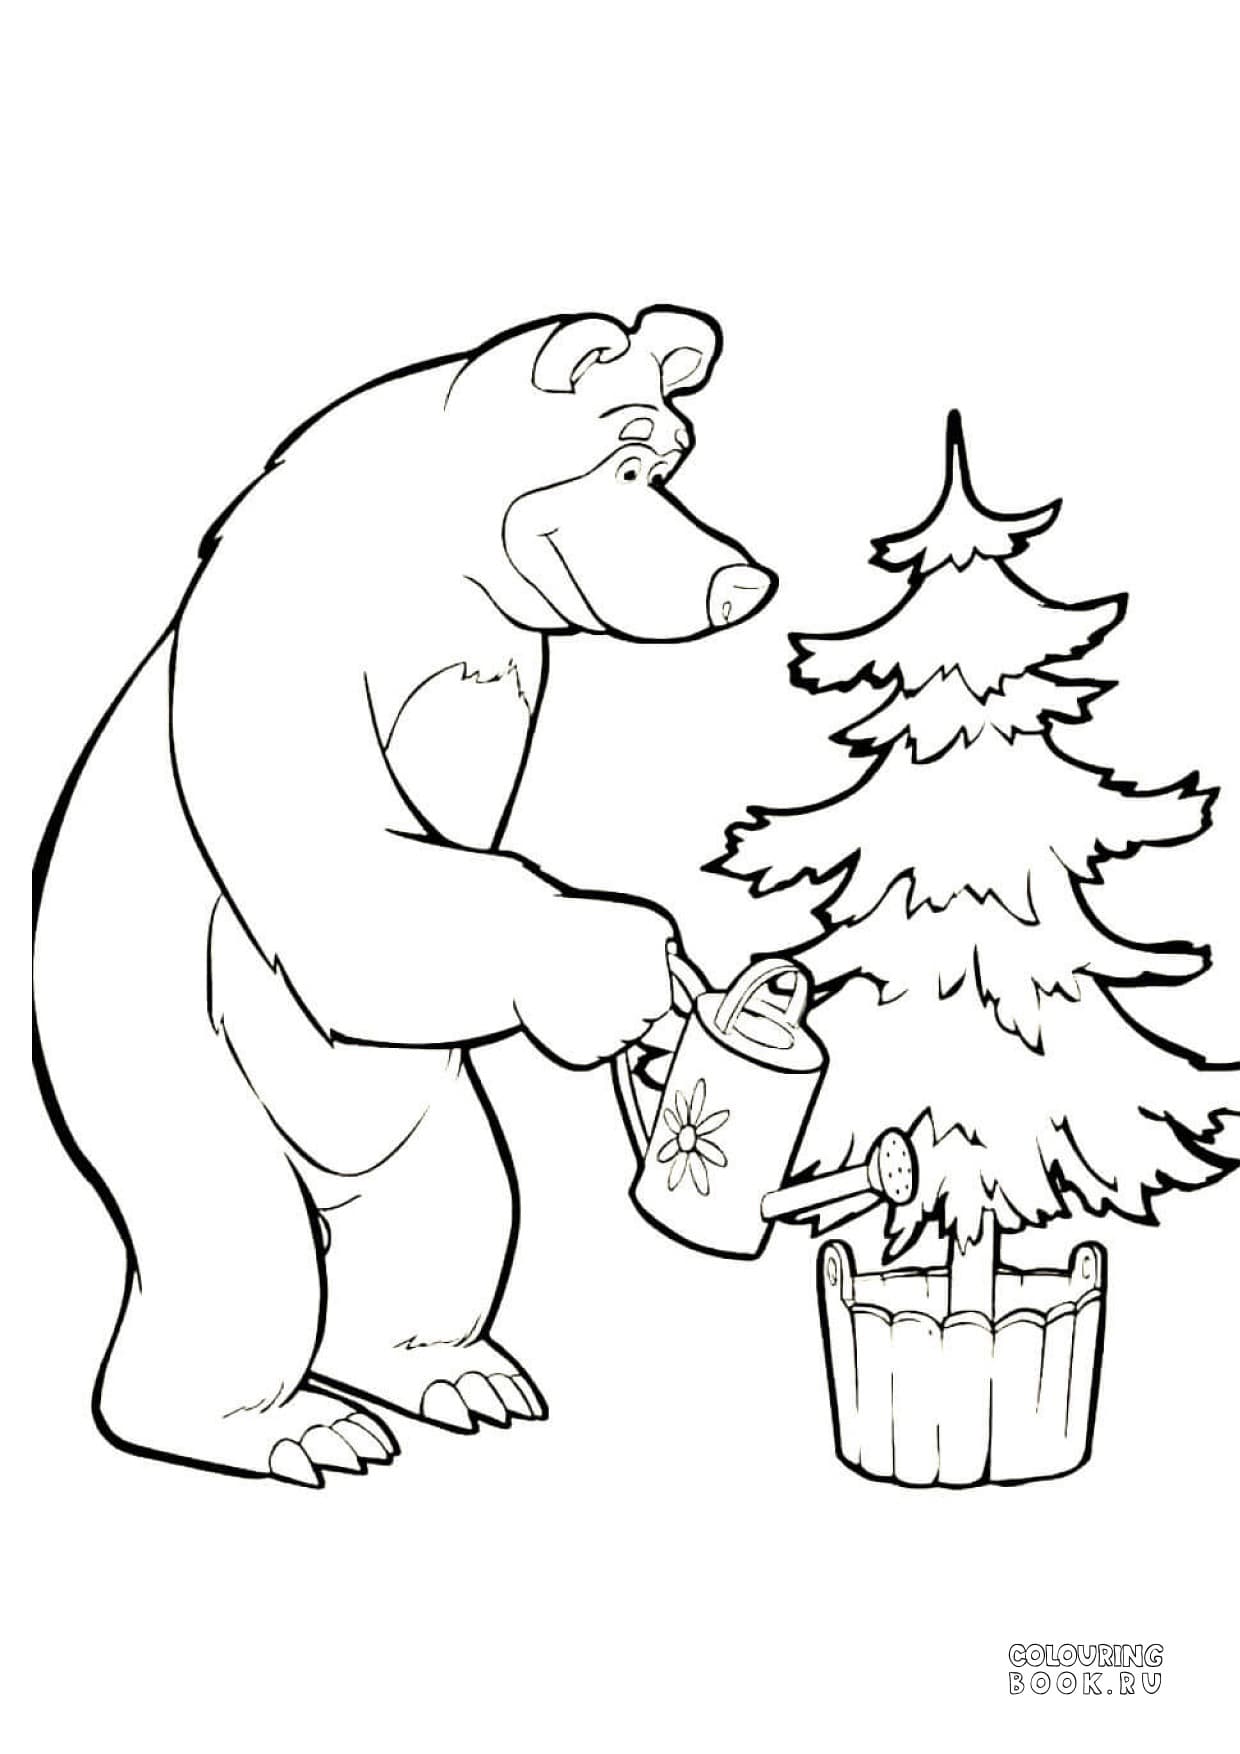 Раскраски маша и медведь распечатать формат а4. Новогодние разукрашки Маша и медведь. Маша и медведь Новогодняя раскраска. Маша и медведь раскраска для малышей. Раскраска Маша и медведь новый год.